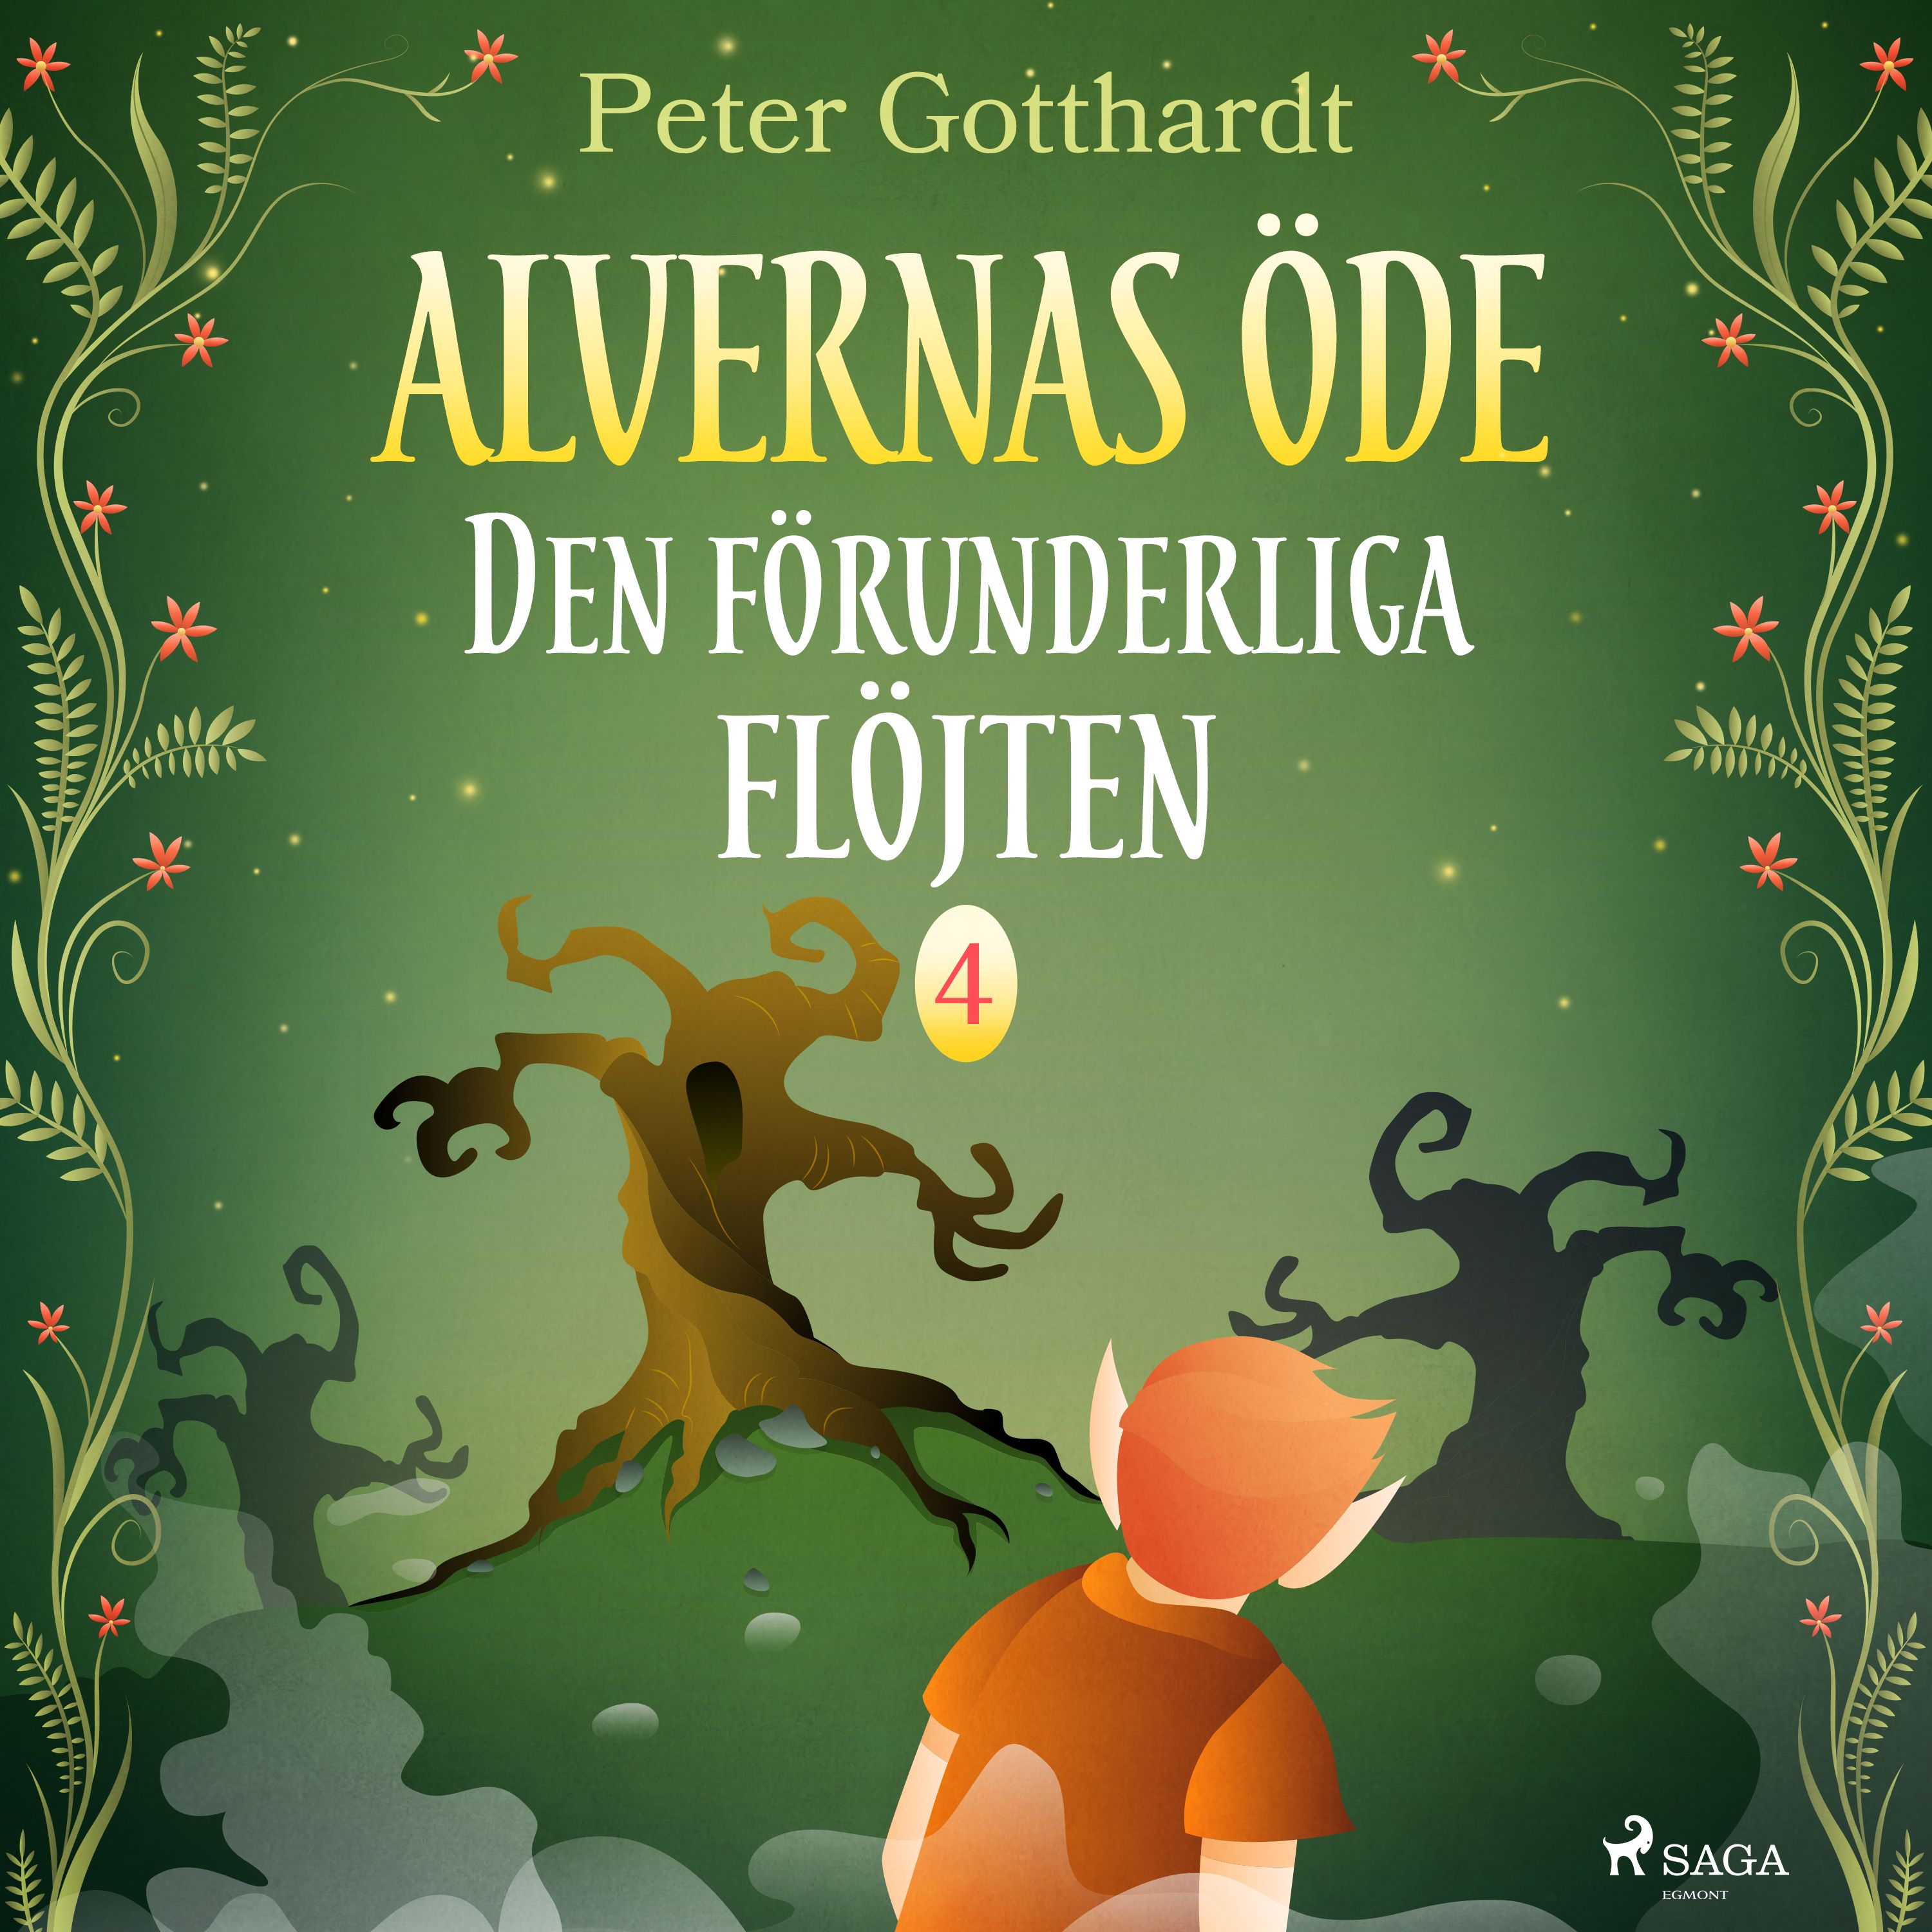 Alvernas öde 4: Den förunderliga flöjten, ljudbok av Peter Gotthardt